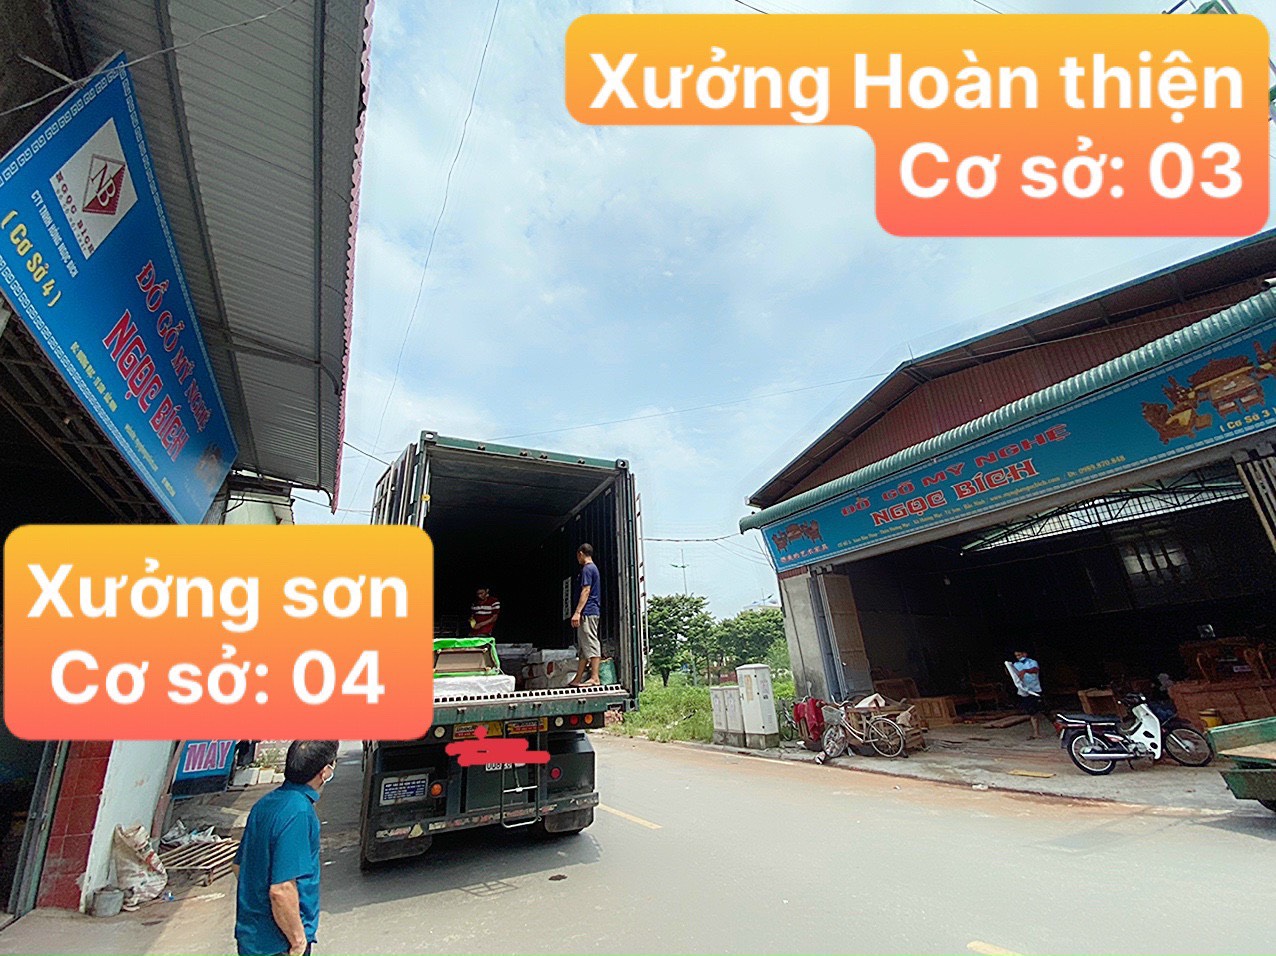 Xưởng sản xuất Đồ Gỗ Ngọc Bích – phân xưởng 3 và 4 tại Phường Hương Mạc – TP Từ Sơn – Bắc Ninh.